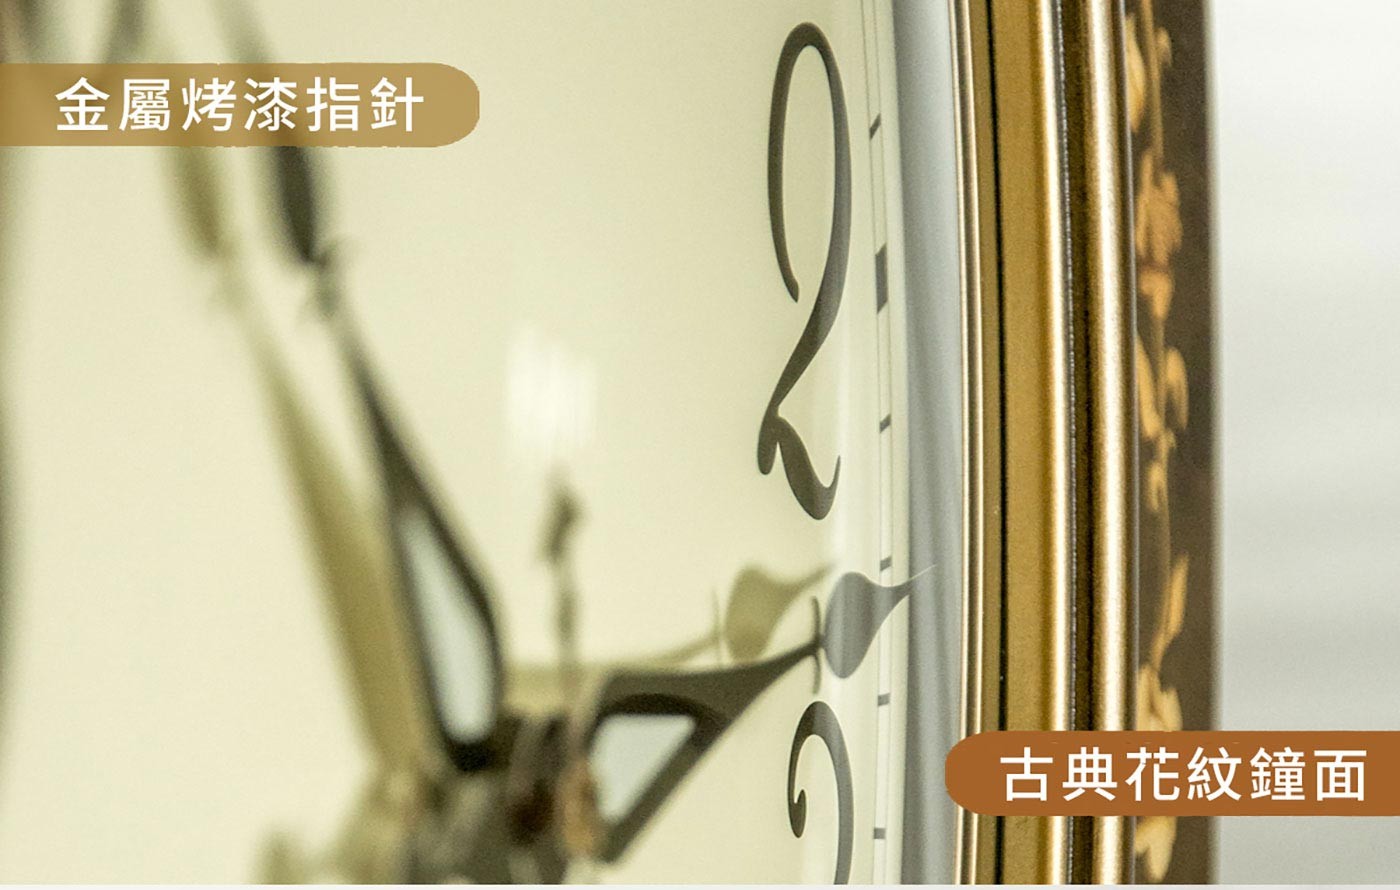 RHYTHM日本麗聲鐘超大型實木掛鐘CMG298NR06，弧面玻璃，防潮、防水、防腐蝕、不退色、棕色實木外殼，堅固耐用不易變形，古典花紋鐘面搭配金屬烤漆指針。